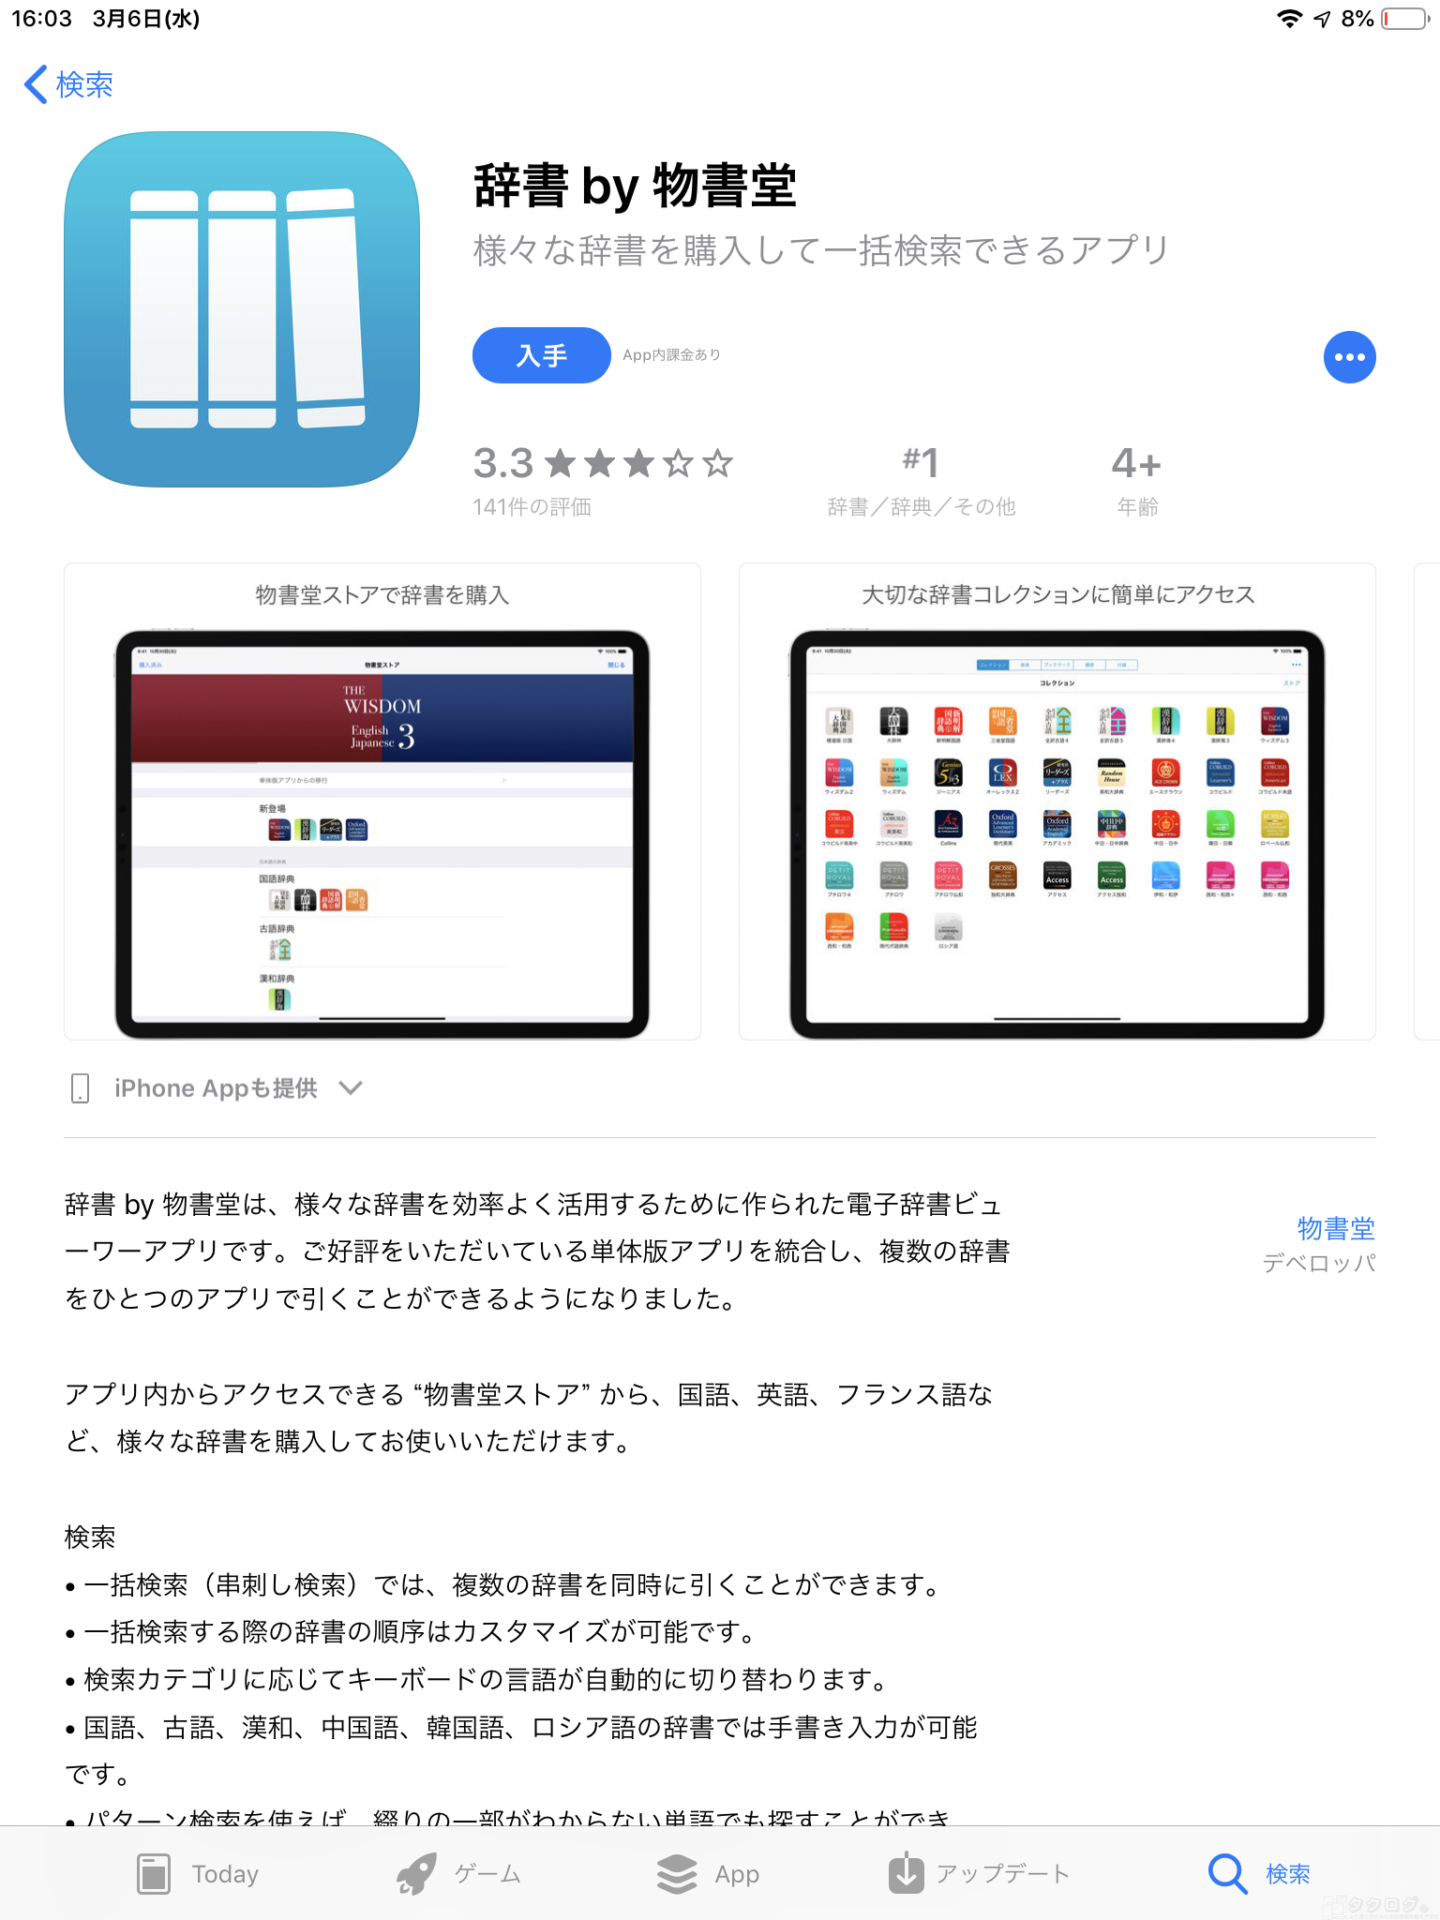 物書堂 Ios向け英単語学習アプリを統合版に移行 購入済みコンテンツは無料 串刺し検索も可能に タクログ